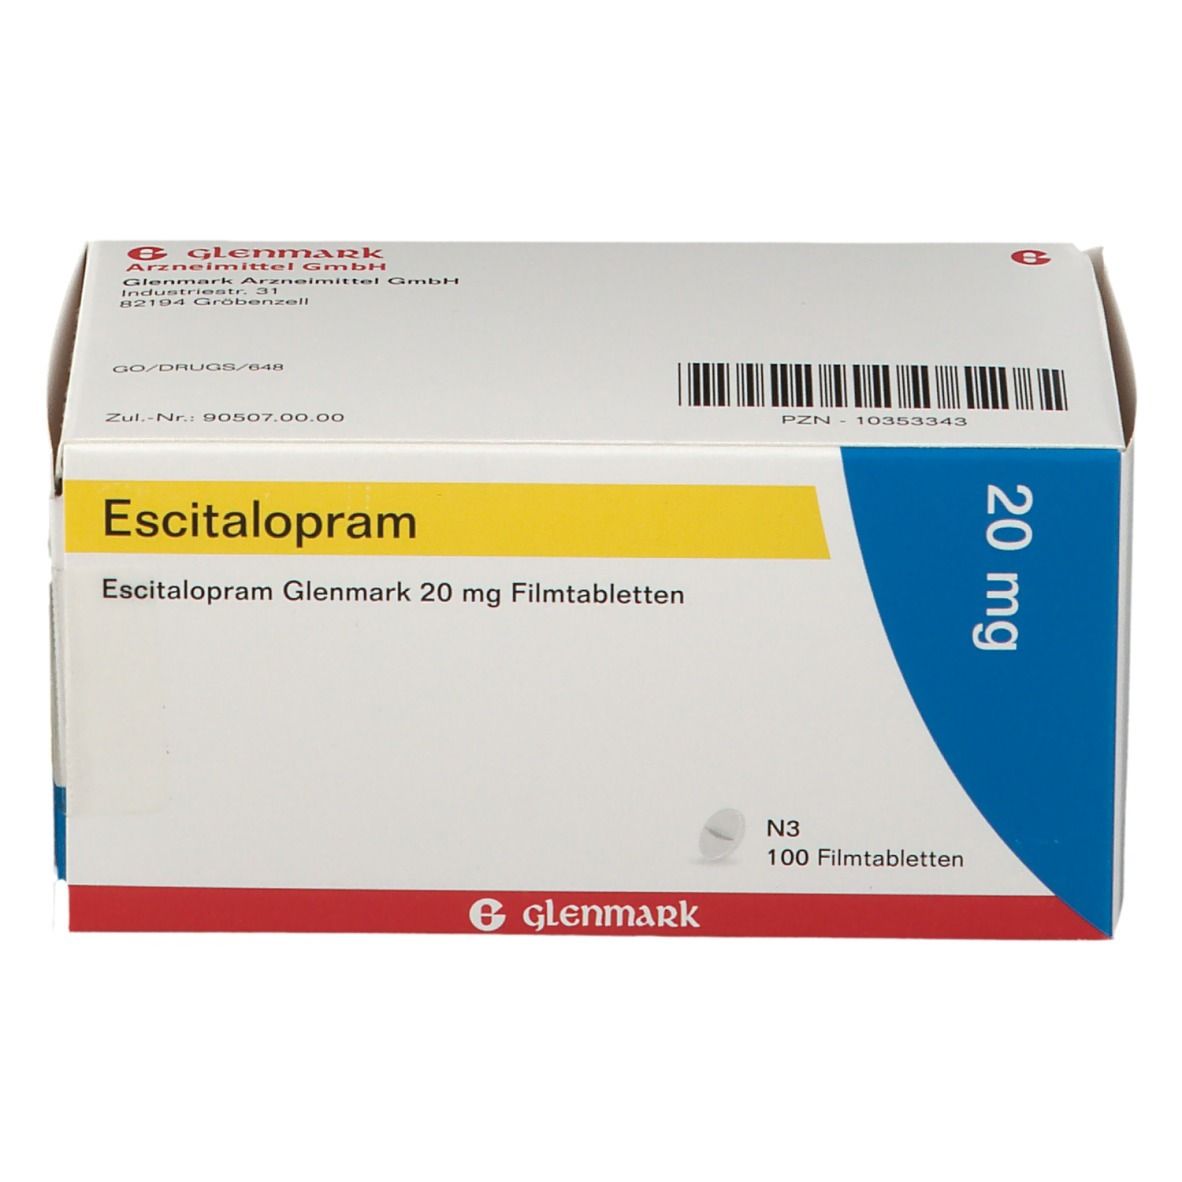 Escitalopram Glenmark 20 mg